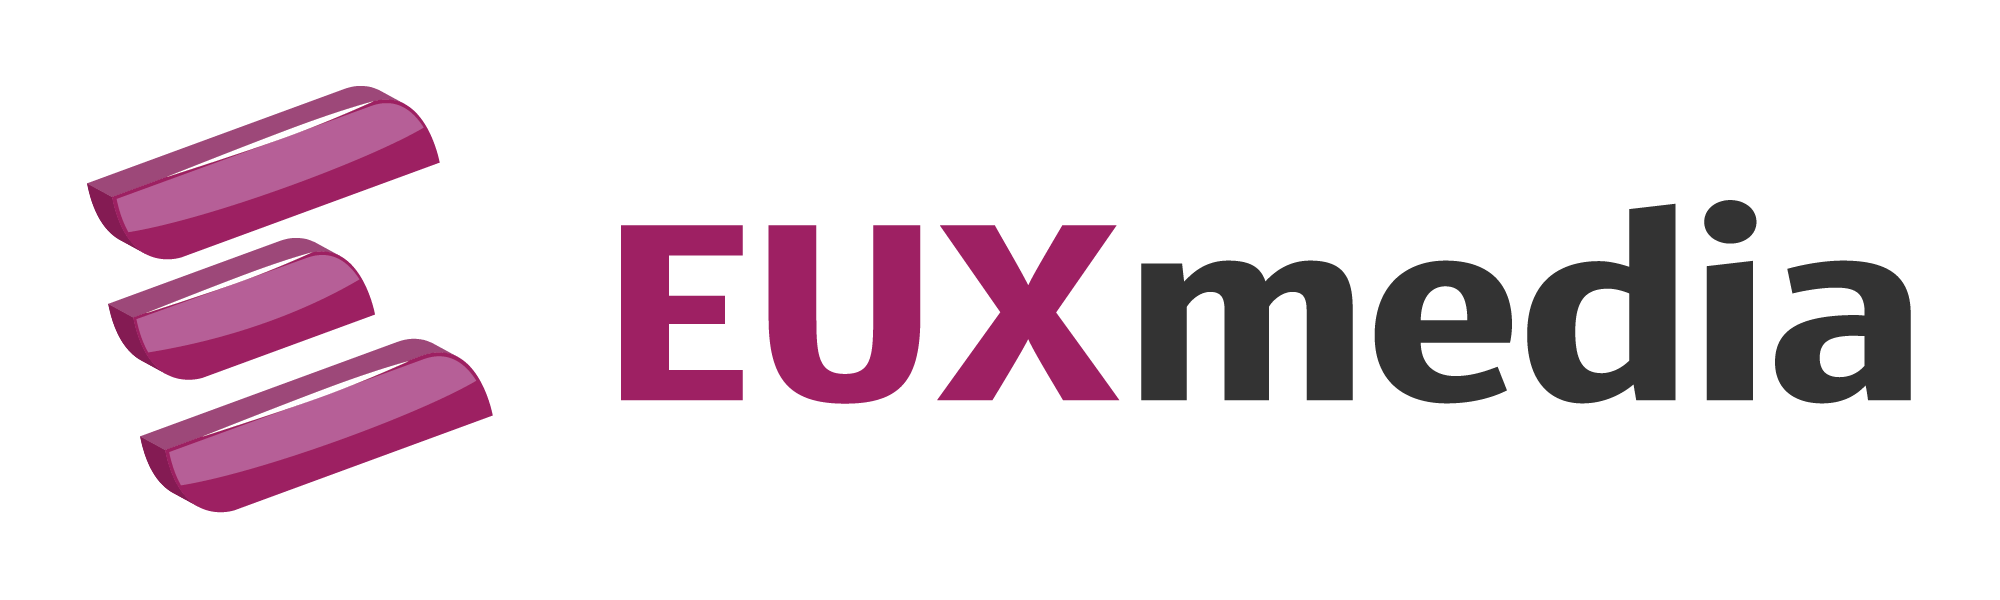 EUXmedia